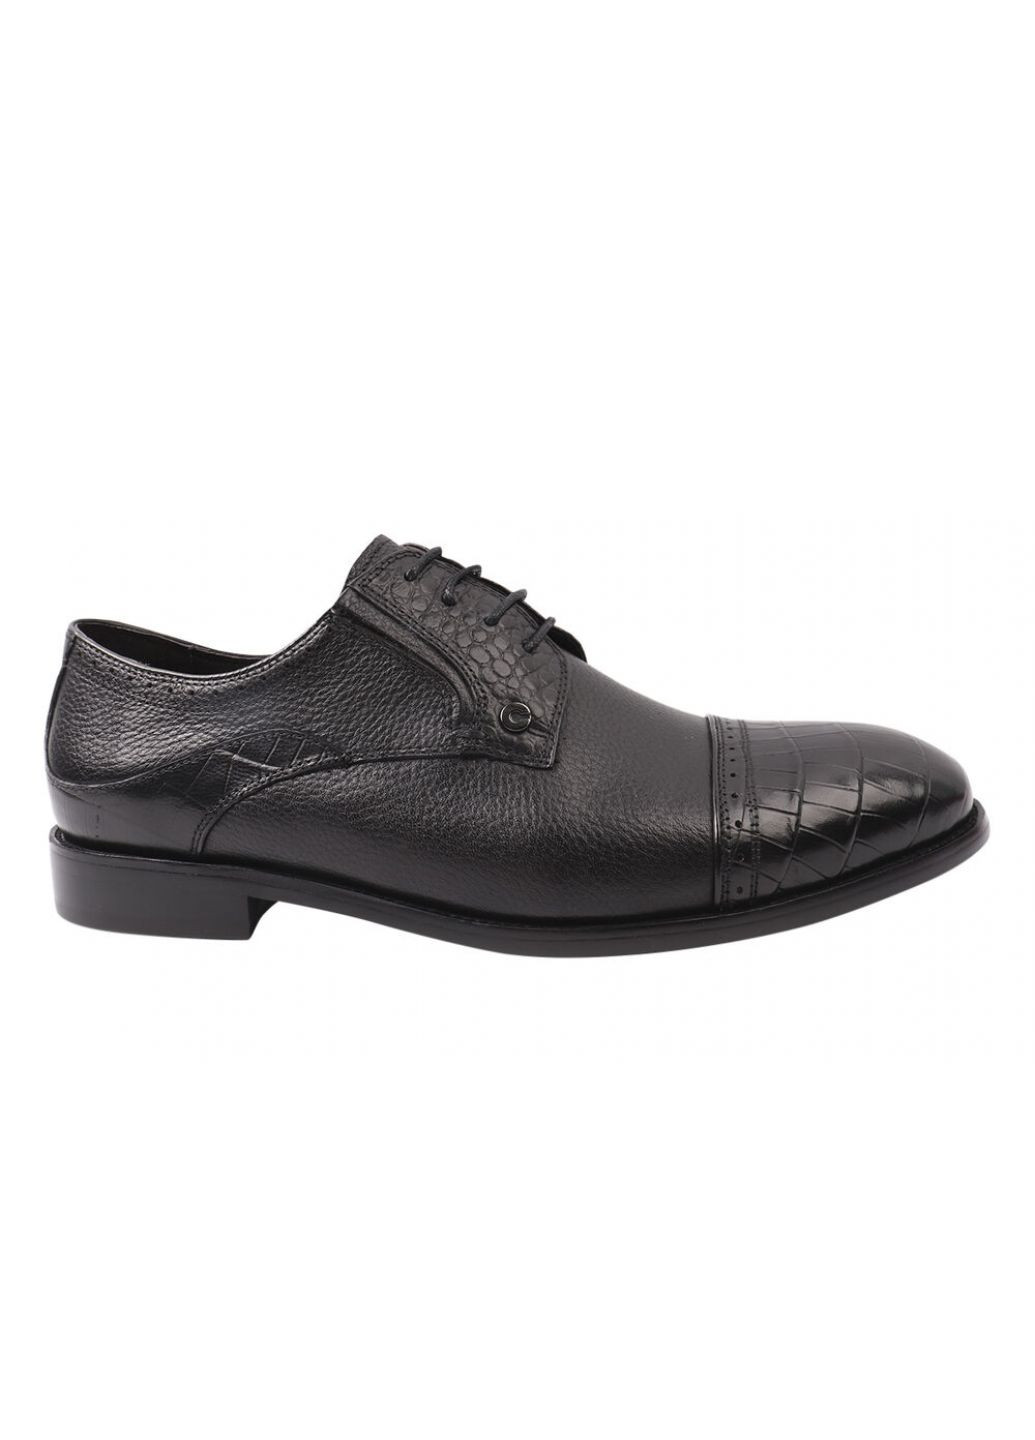 Черные туфли мужские из натуральной кожи, на низком ходу, цвет черный, Anemone